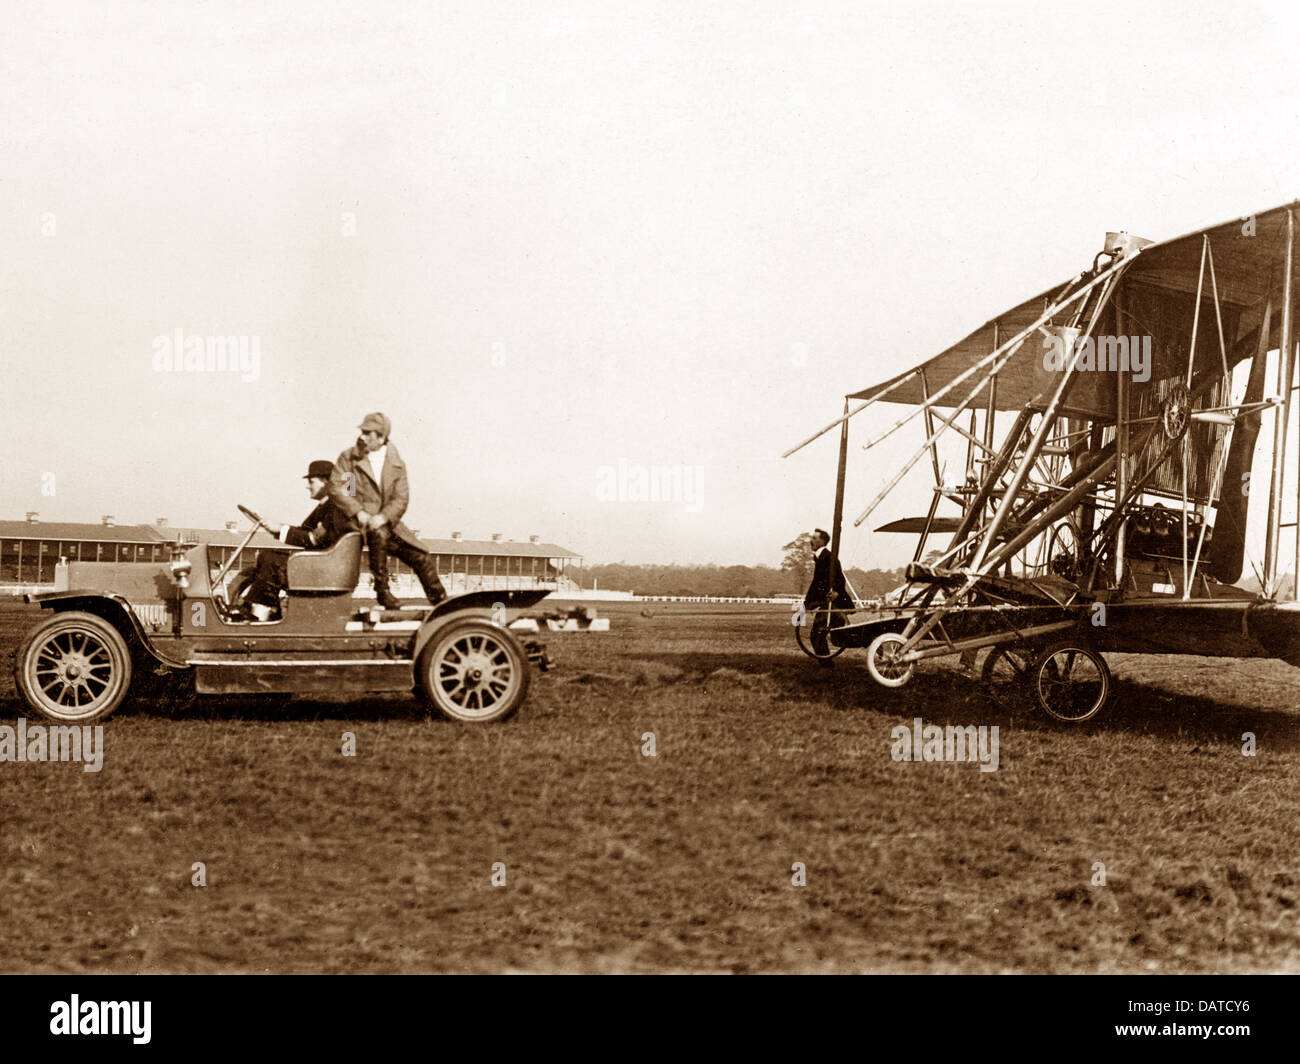 Doncaster Race Course Aviation Première réunion en octobre 1909 - Cody biplan endommagés. Banque D'Images